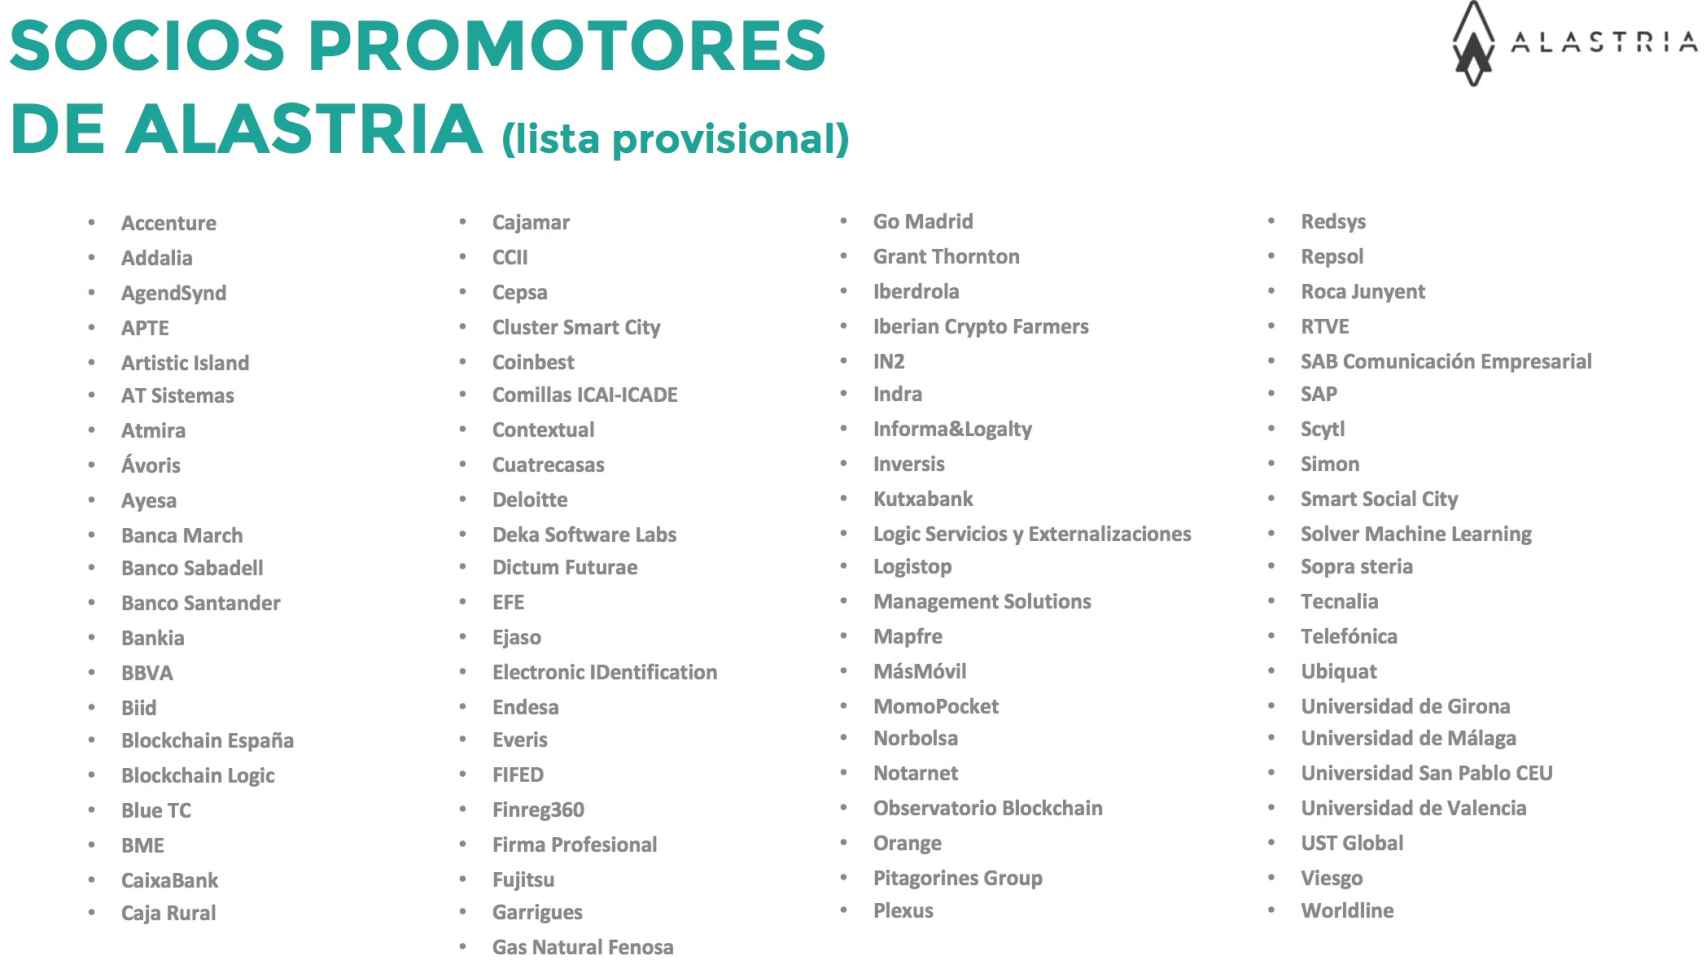 Lista provisional de los socios promotores de Alastria.